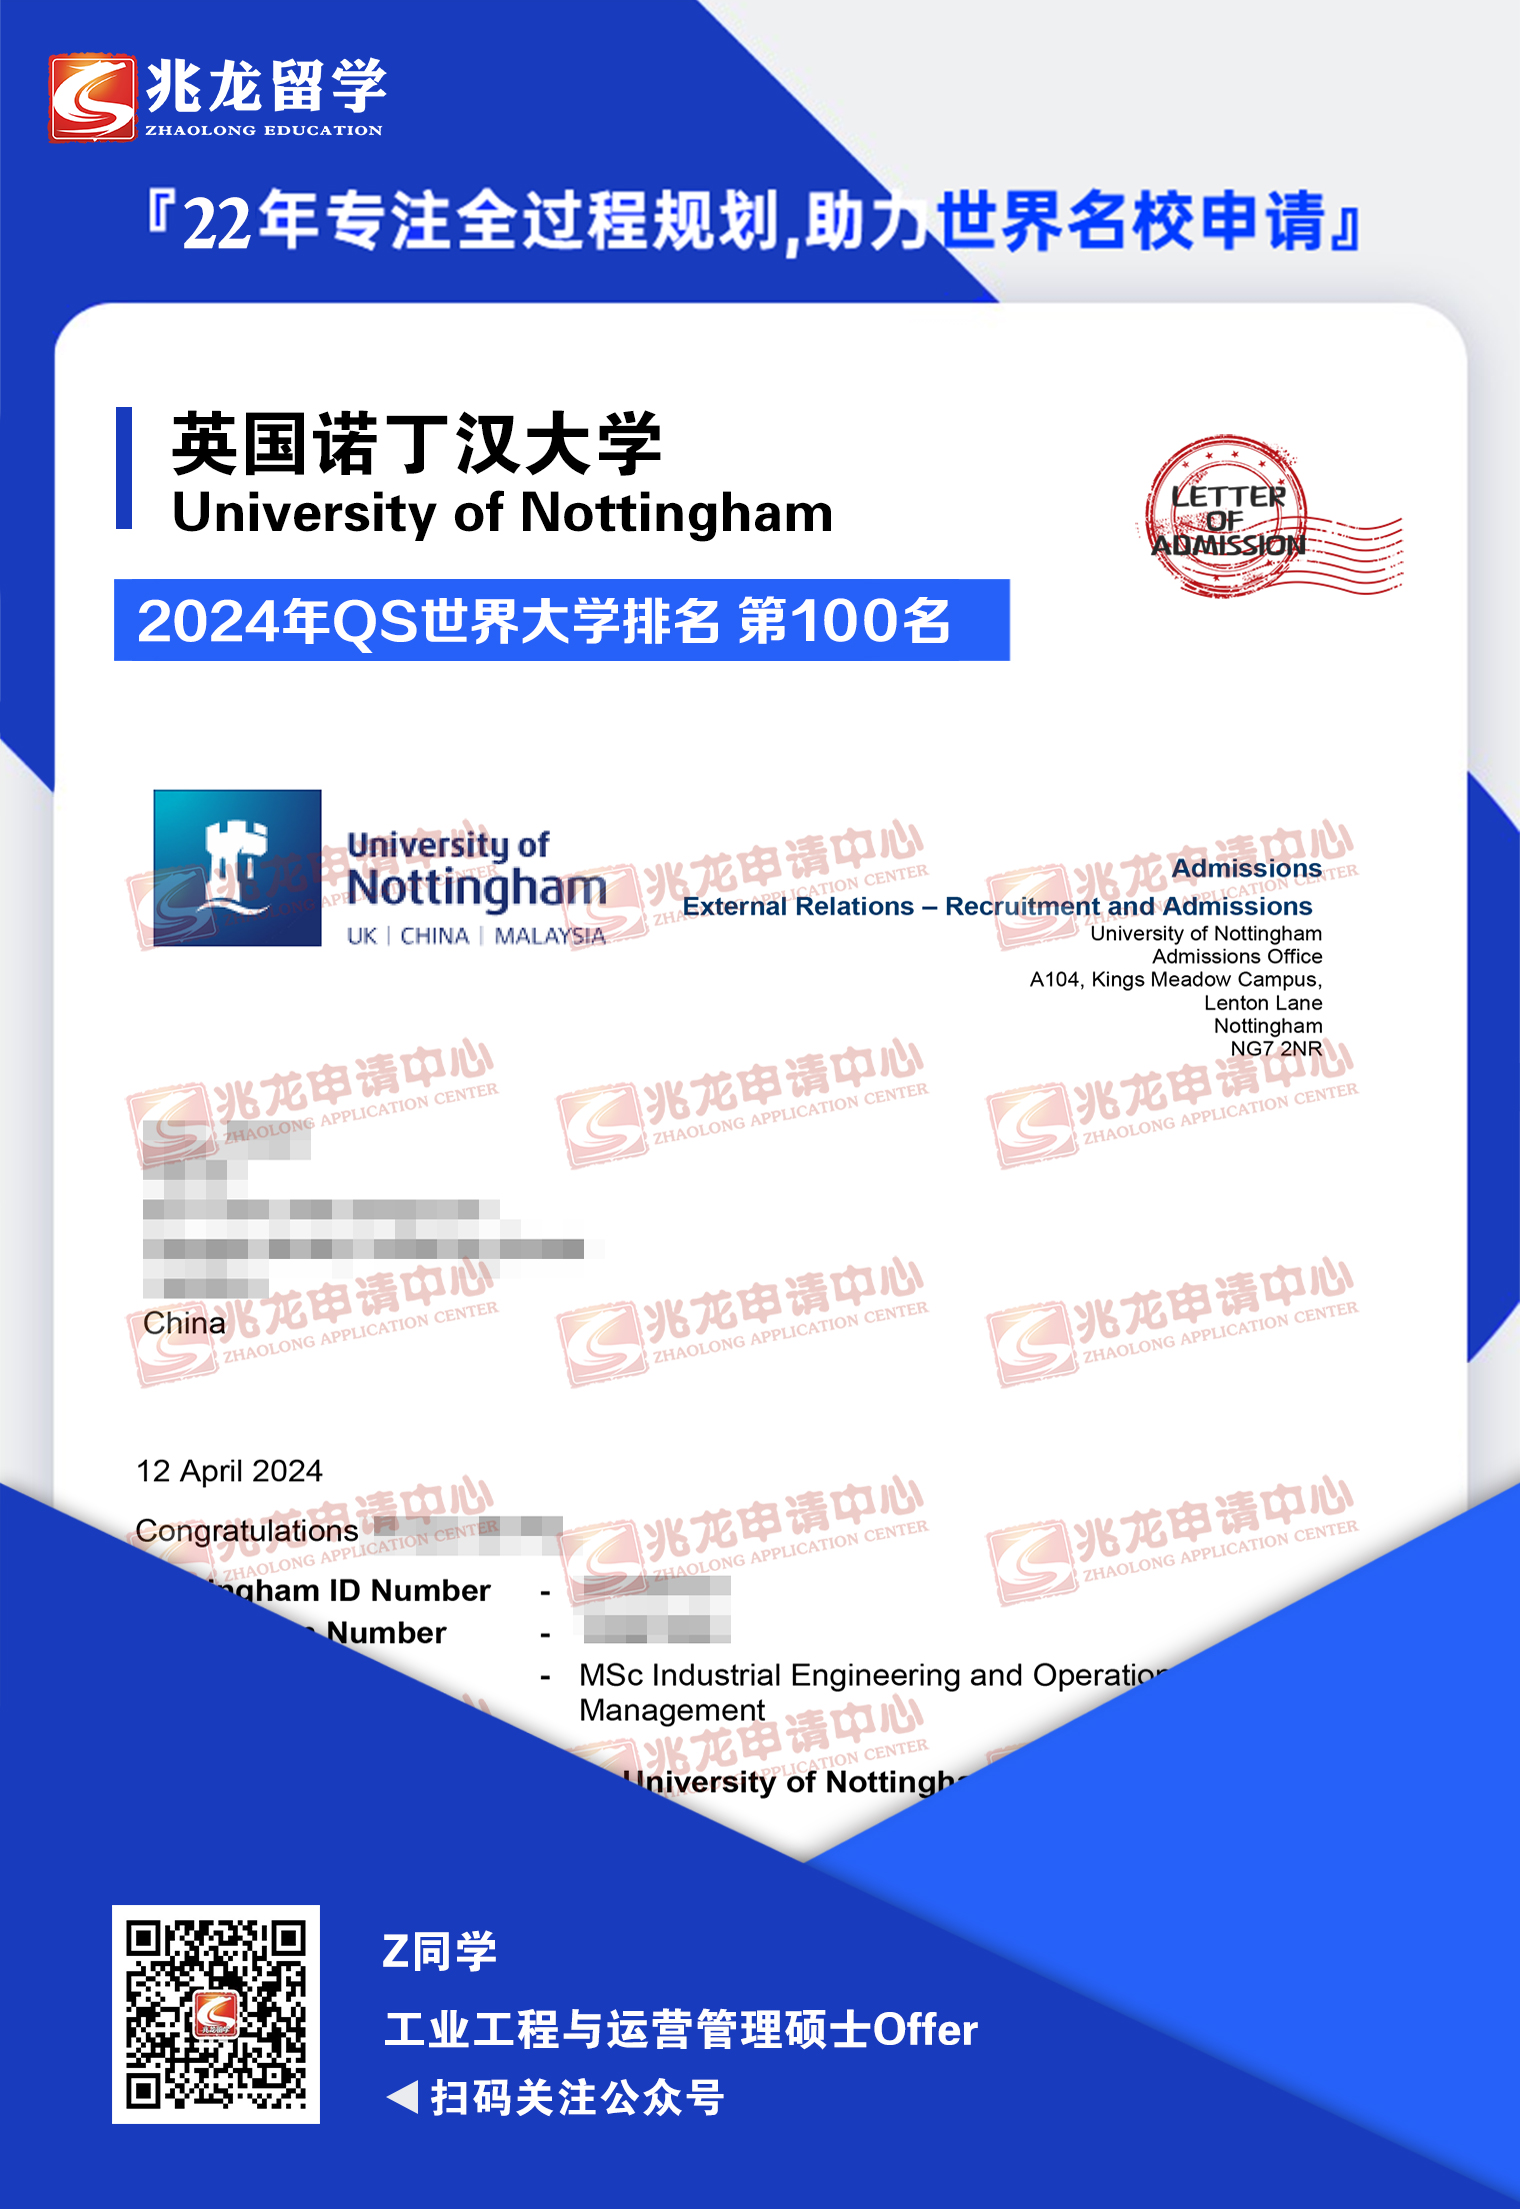 赵xinyue英国诺丁汉大学工业工程与运营管理硕士offer-兆龙留学.jpg